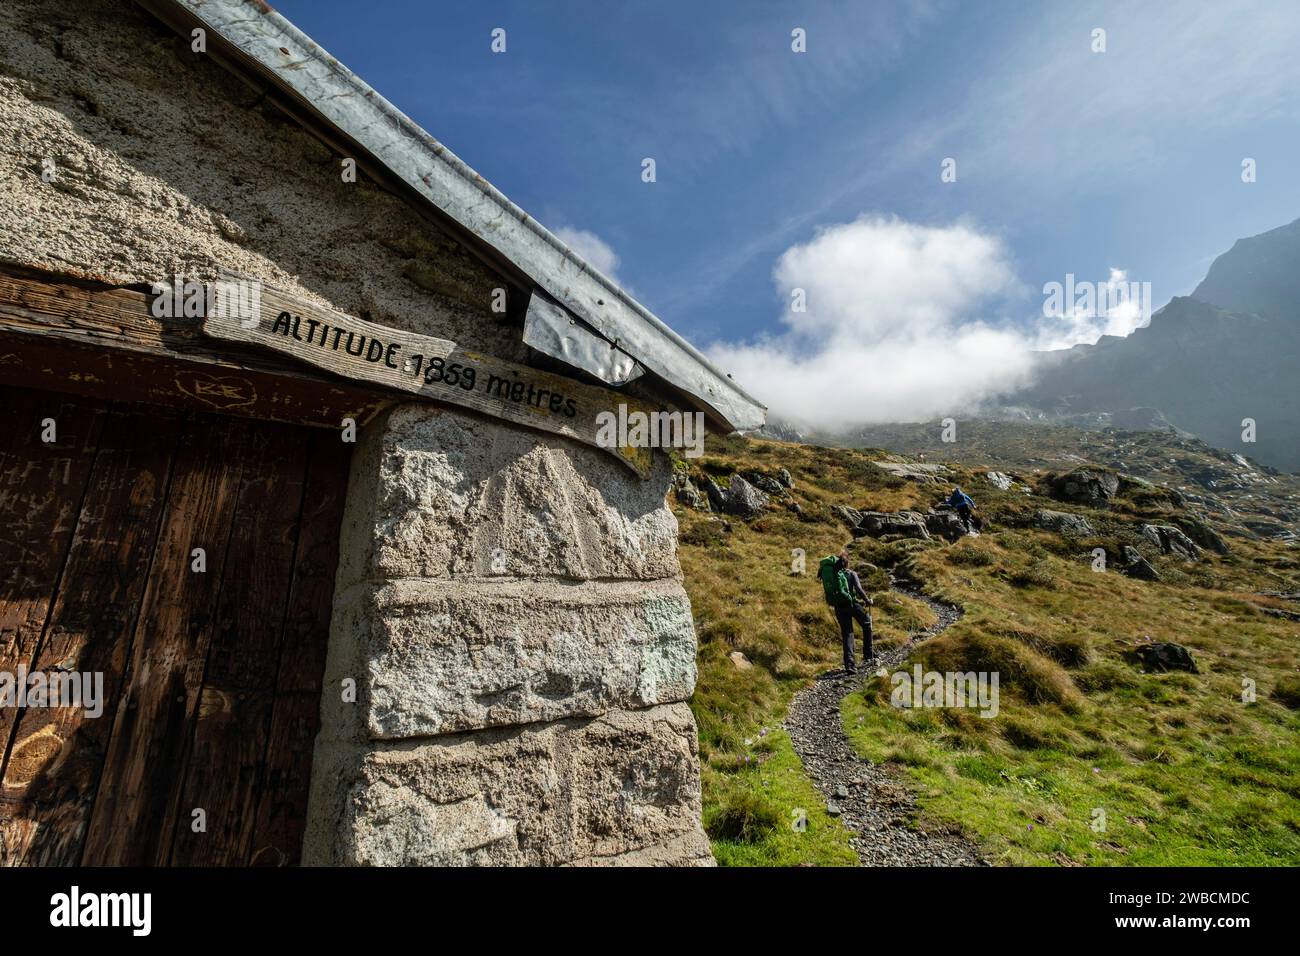 cabaña de Caoussis, valle de Valier -Riberot-, Parque Natural Regional de los Pirineos de Ariège, cordillera de los Pirineos, Francia Stock Photo